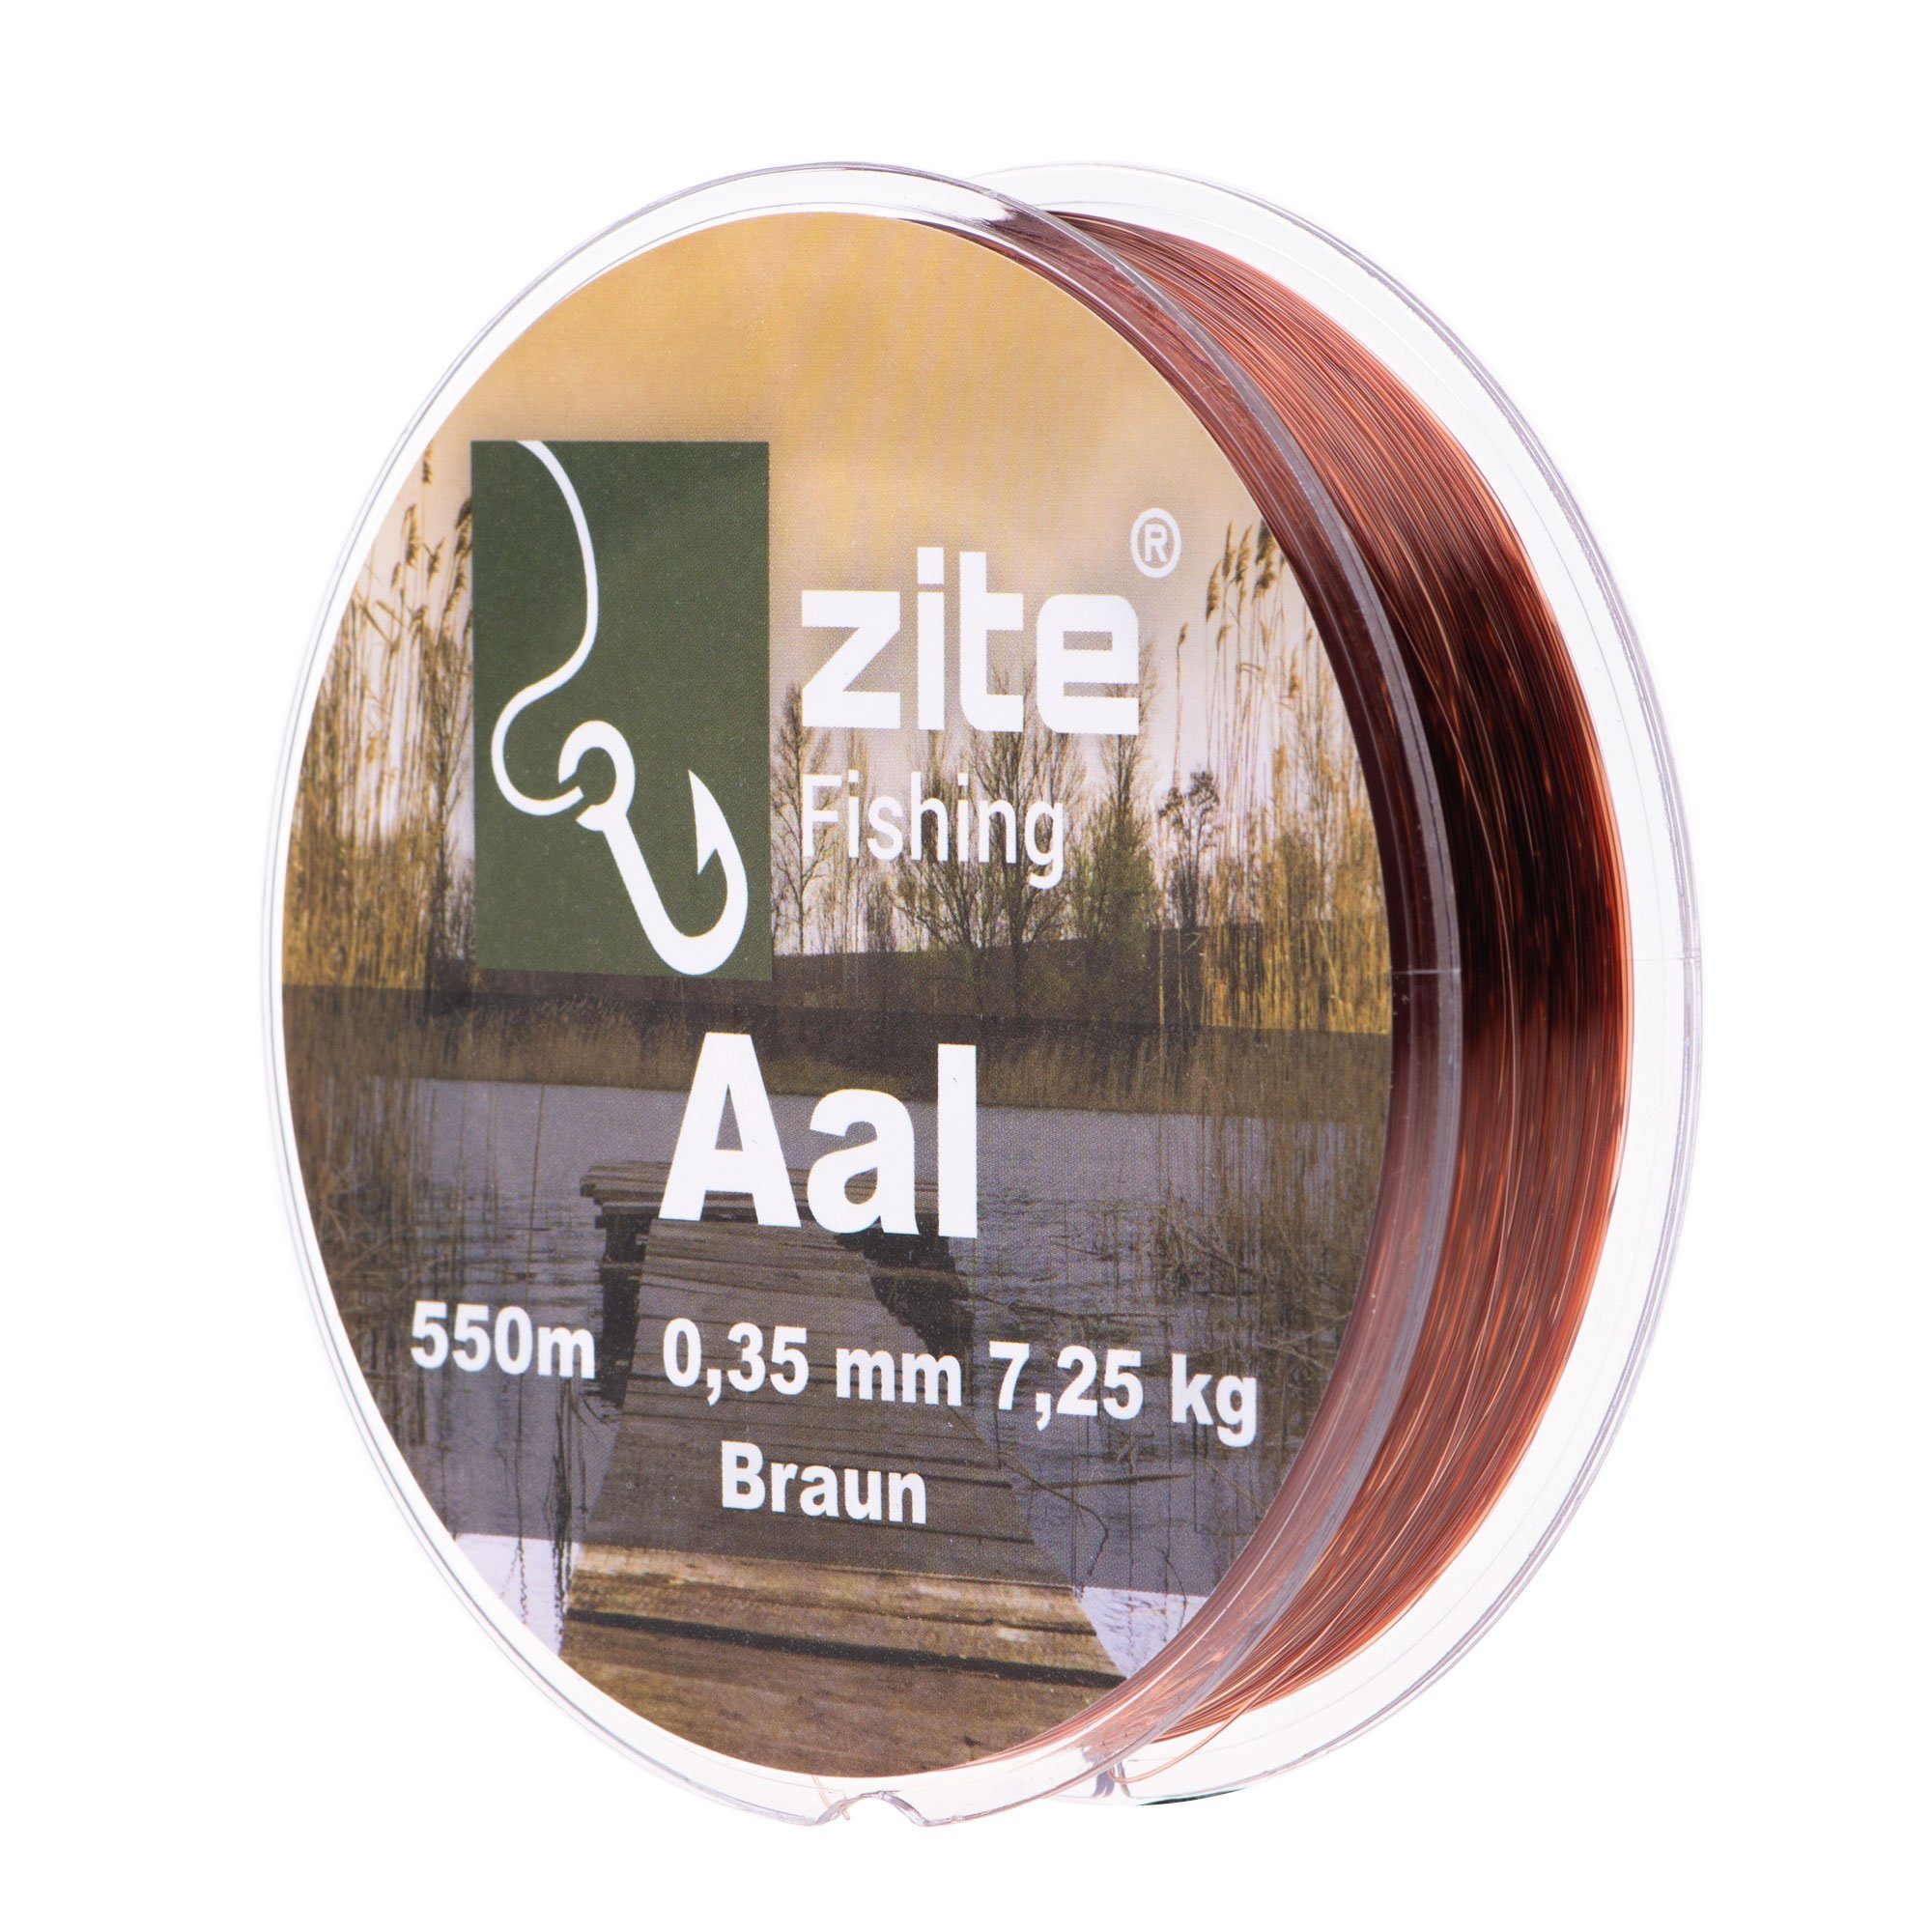 Zite Angelschnur Monofile Aalschnur 0,35mm in Braun - 550m Spule - Grund- & Posenangeln